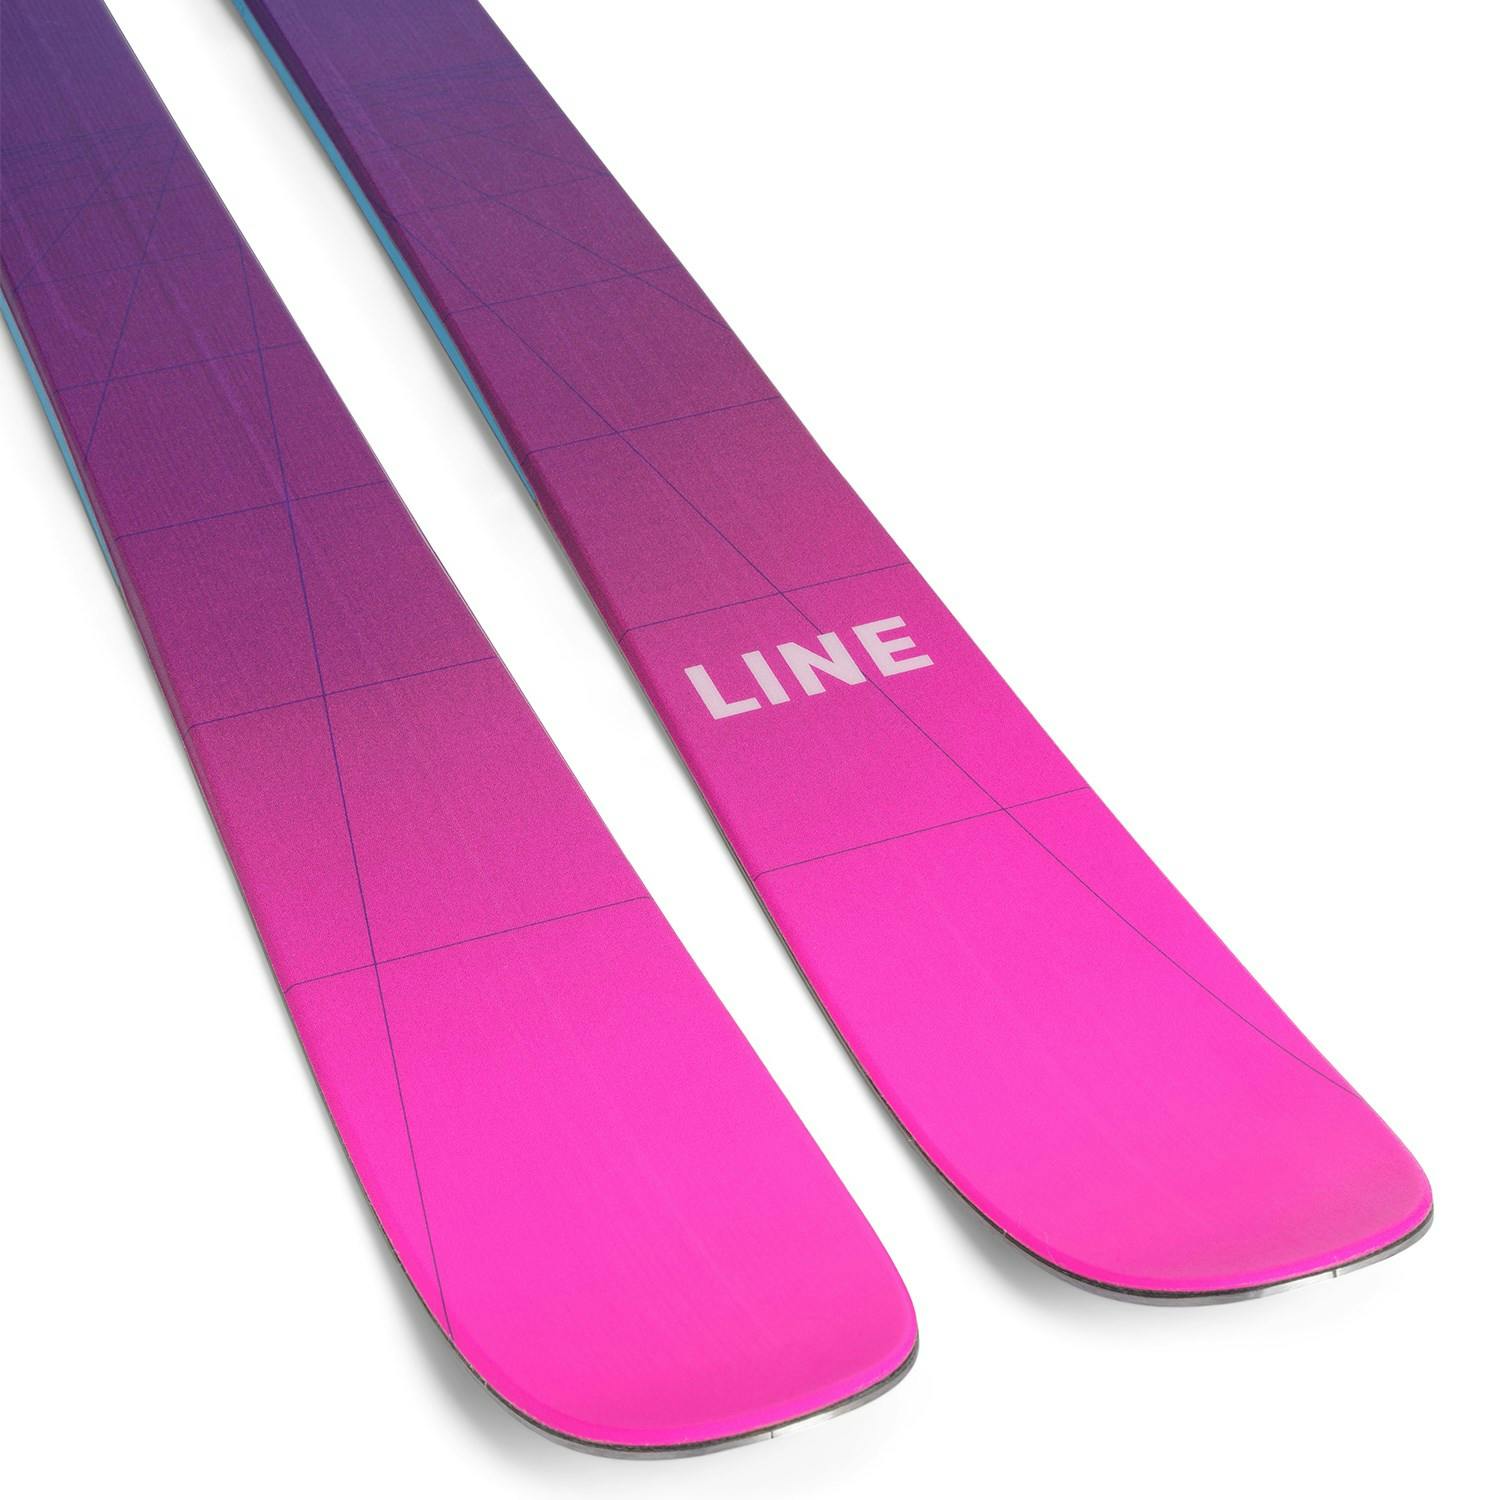 Line Tom Wallisch Pro Skis · 2023